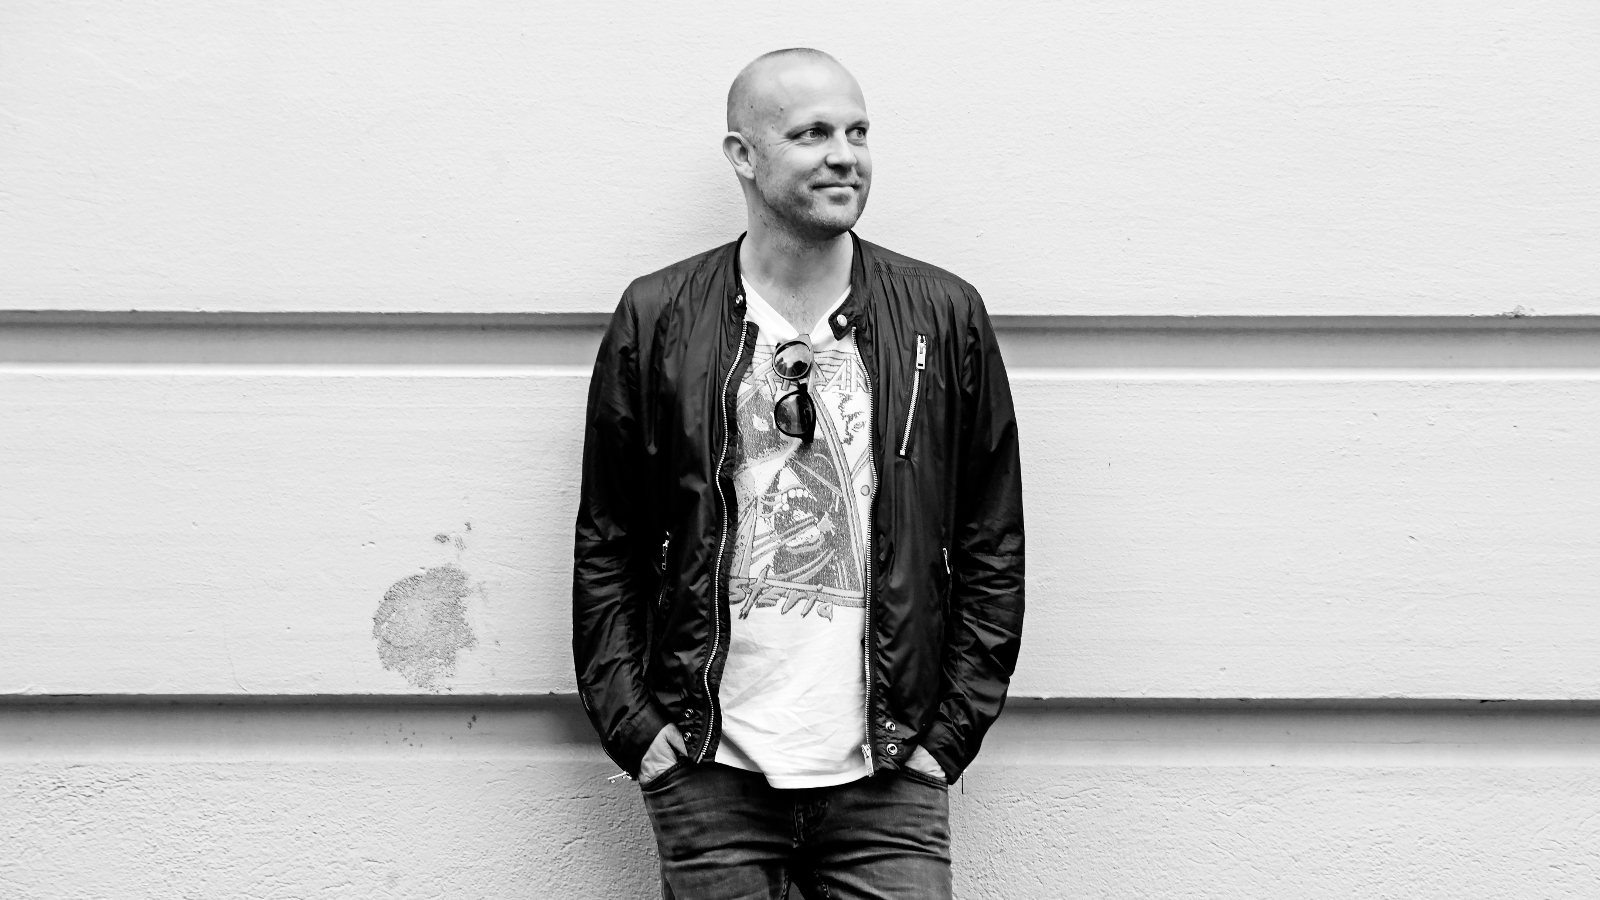 Kuvassa on Mikko Kosonen mustassa nahkatakissa ja vaaleassa t-paidassa. Kuva on puolivartalokuva ja musta-valkoinen.